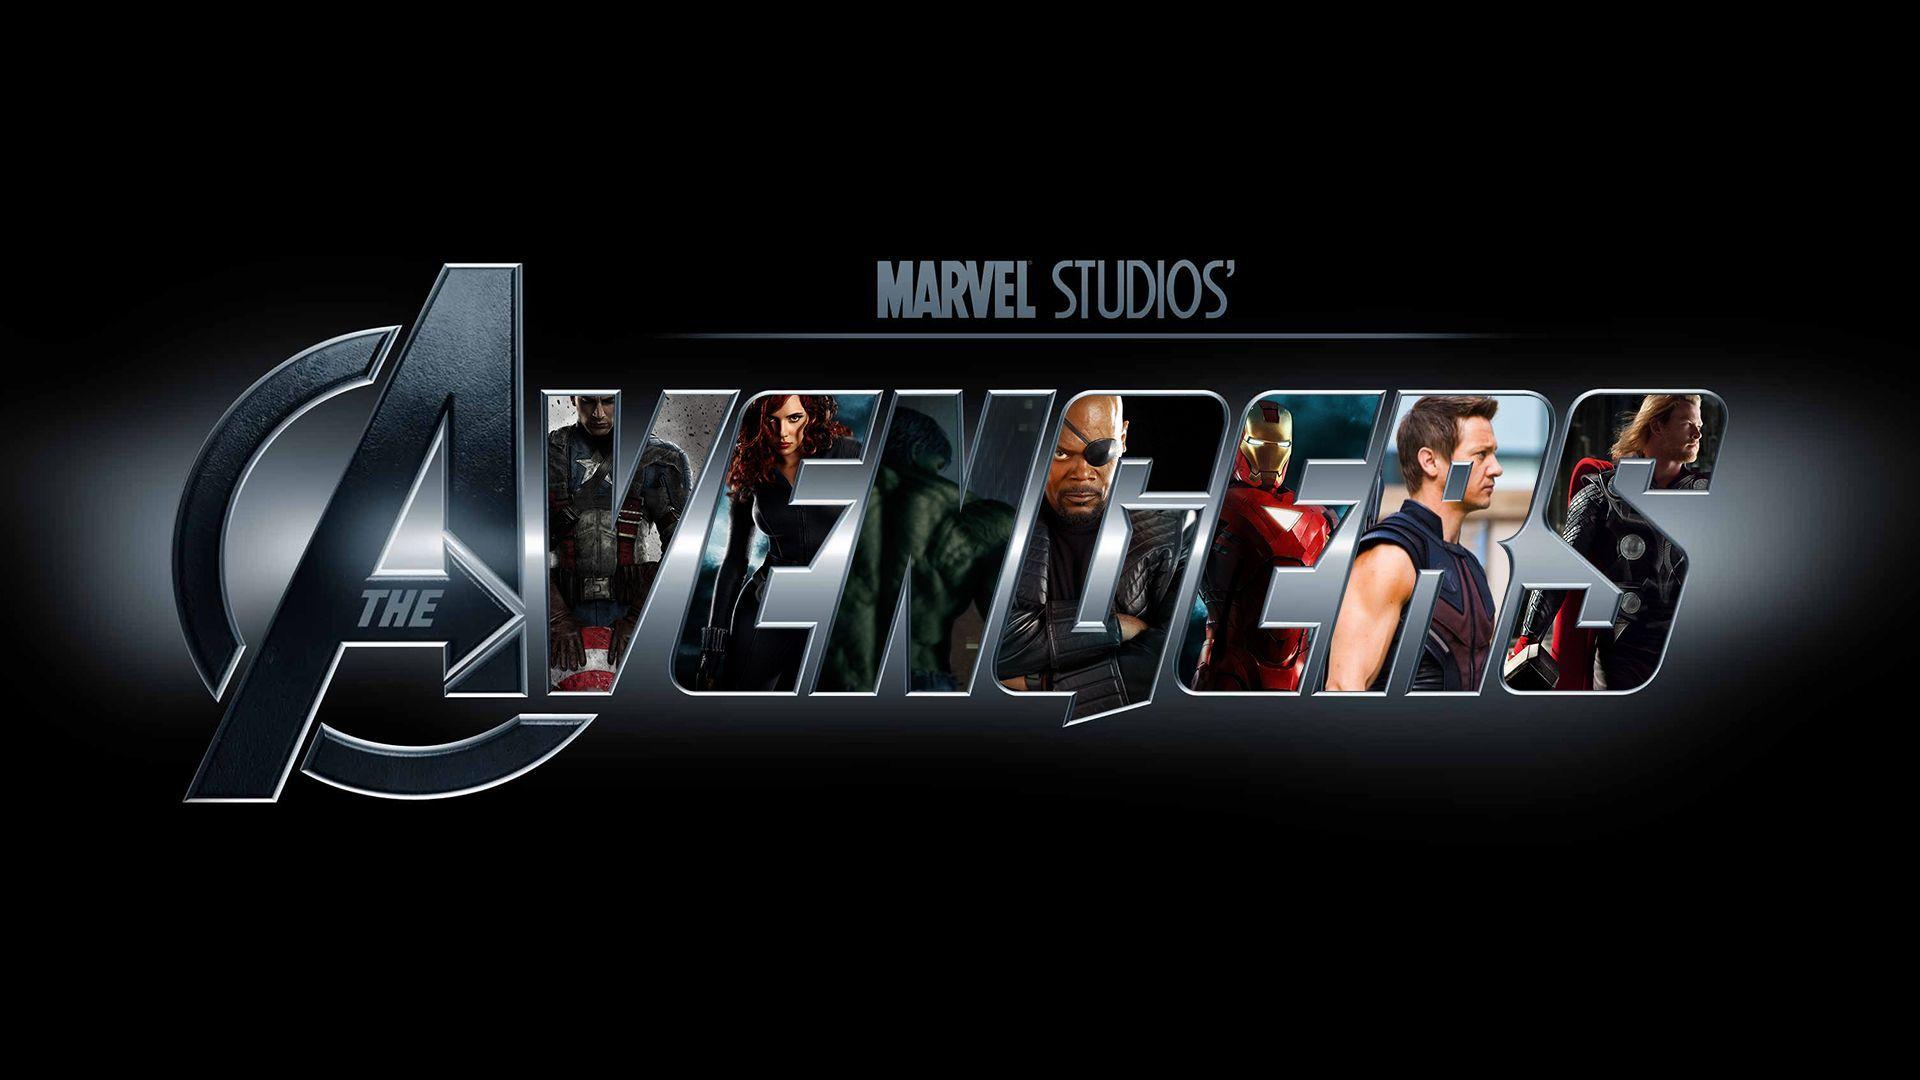 avengers logo background wallpaper. Desktop Background for Free HD Wallpaper. wall-art.com. Avengers wallpaper, Logo wallpaper hd, Avengers logo